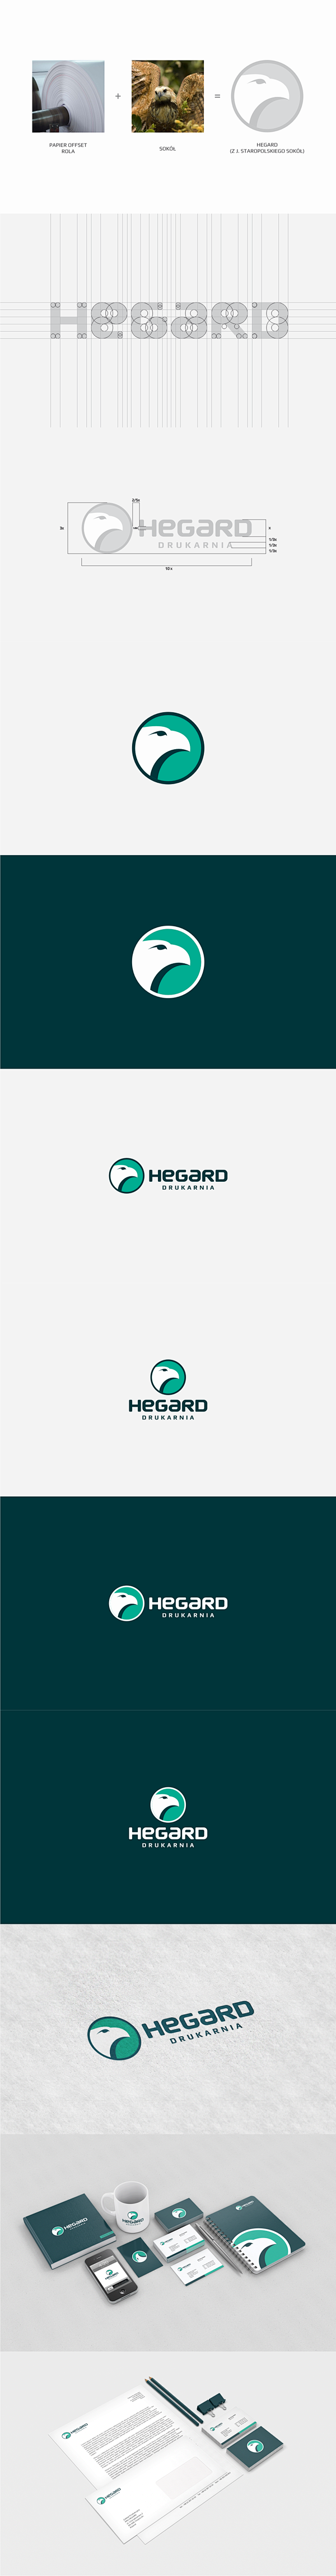 Hegard标志设计欣赏-公司vi设计欣...